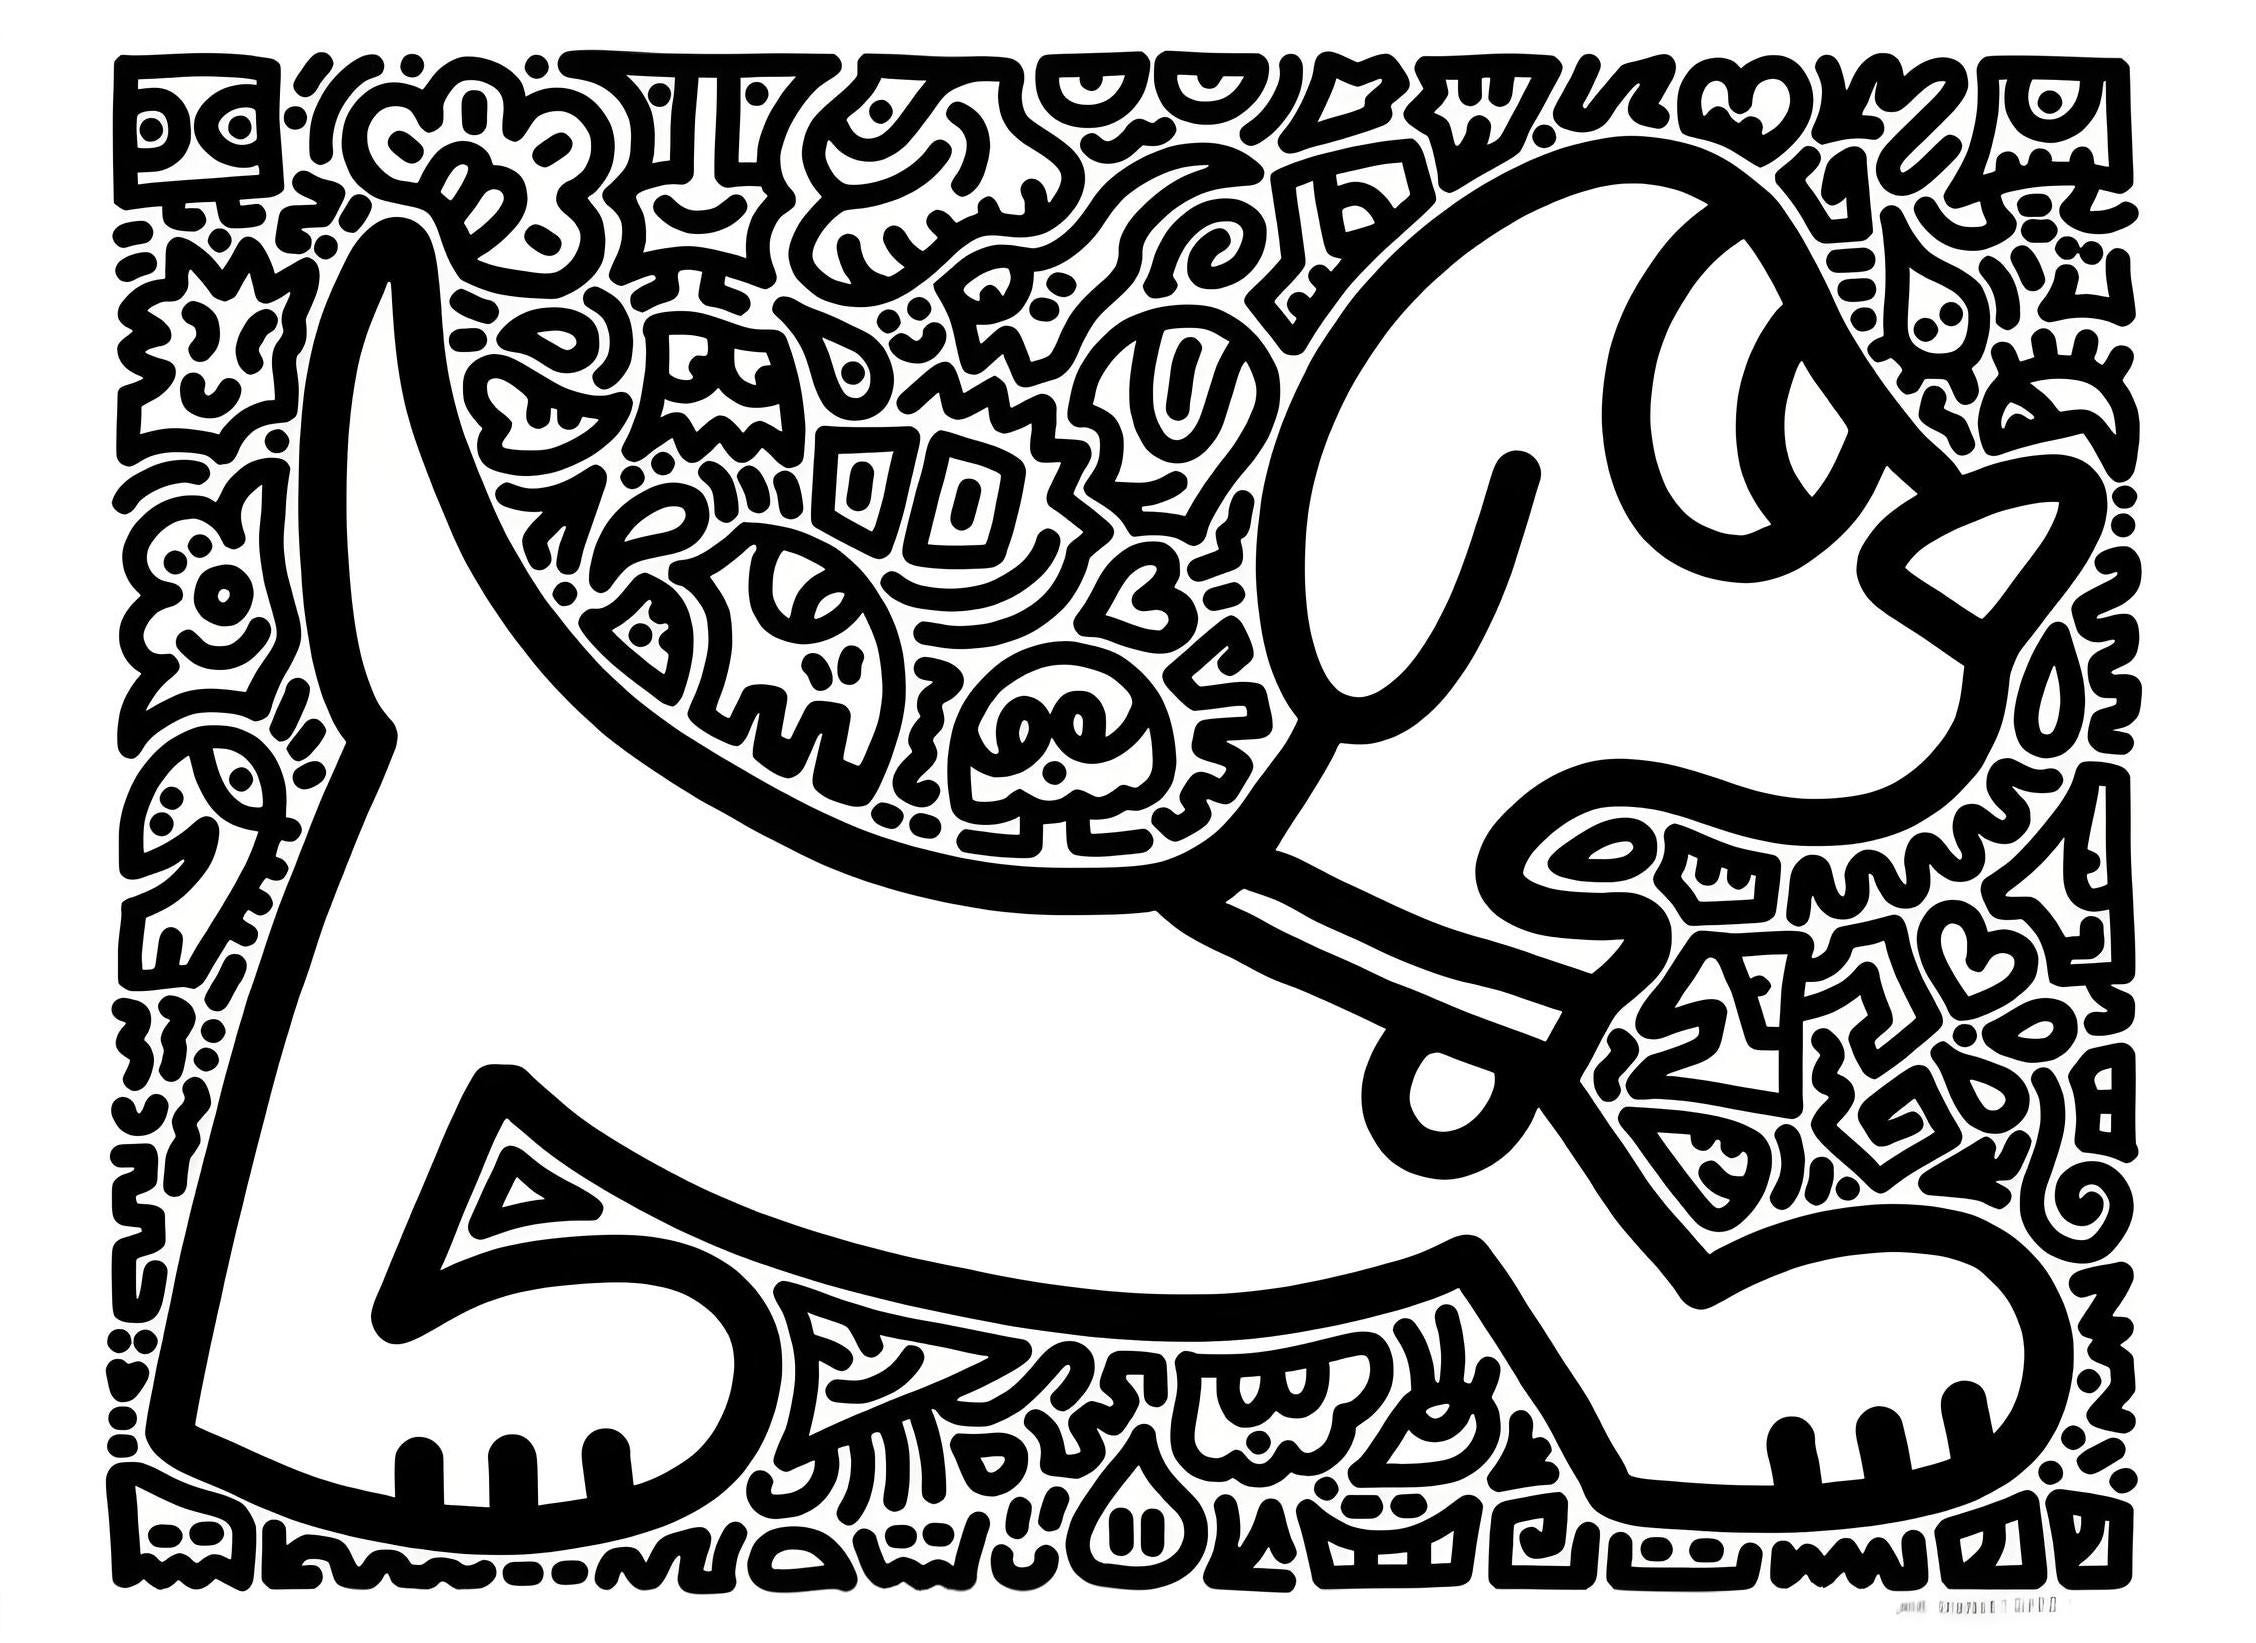 Woof et Meow - Print de Mr. Doodle